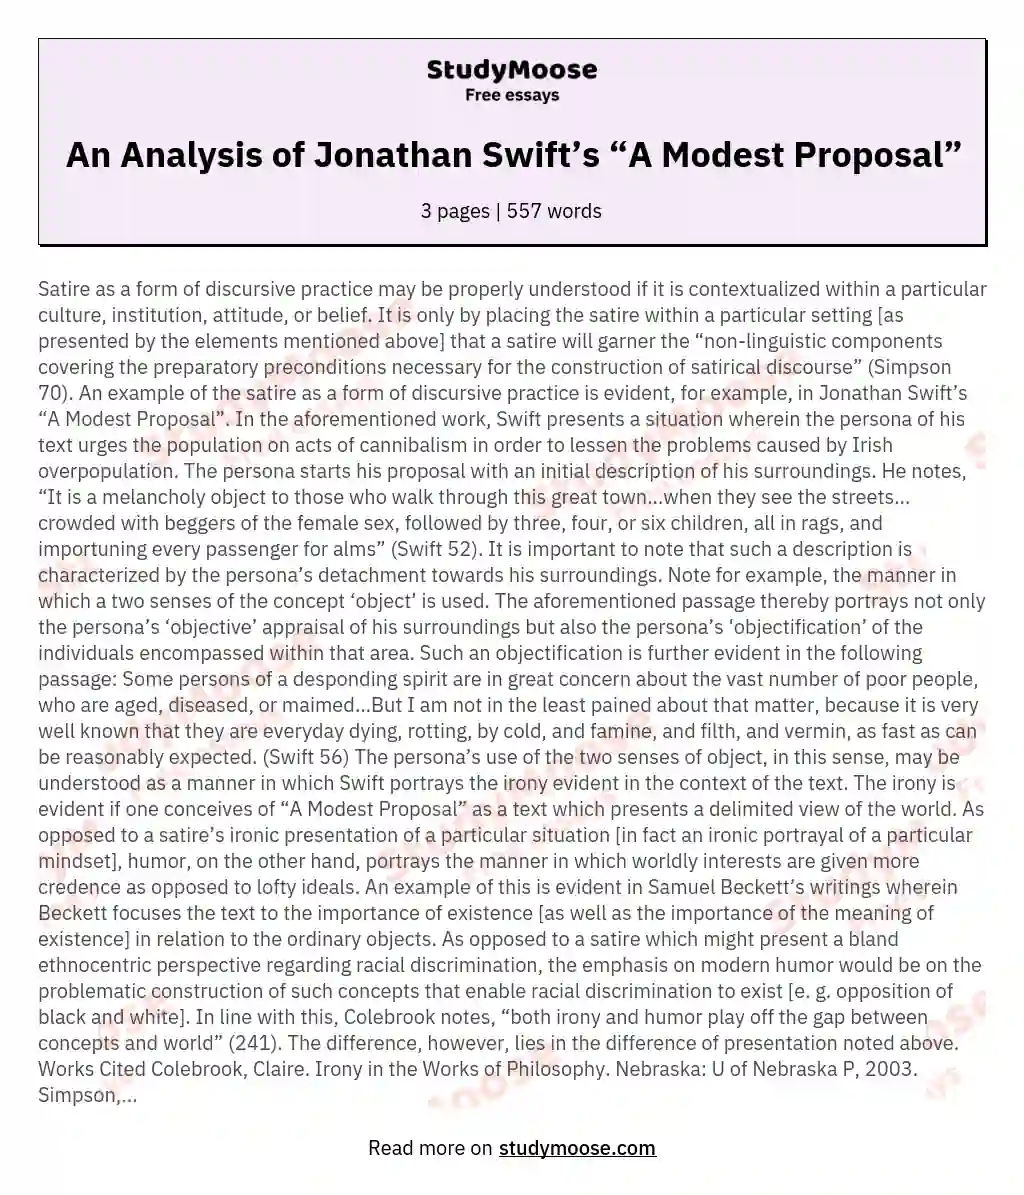 An Analysis of Jonathan Swift’s “A Modest Proposal” essay